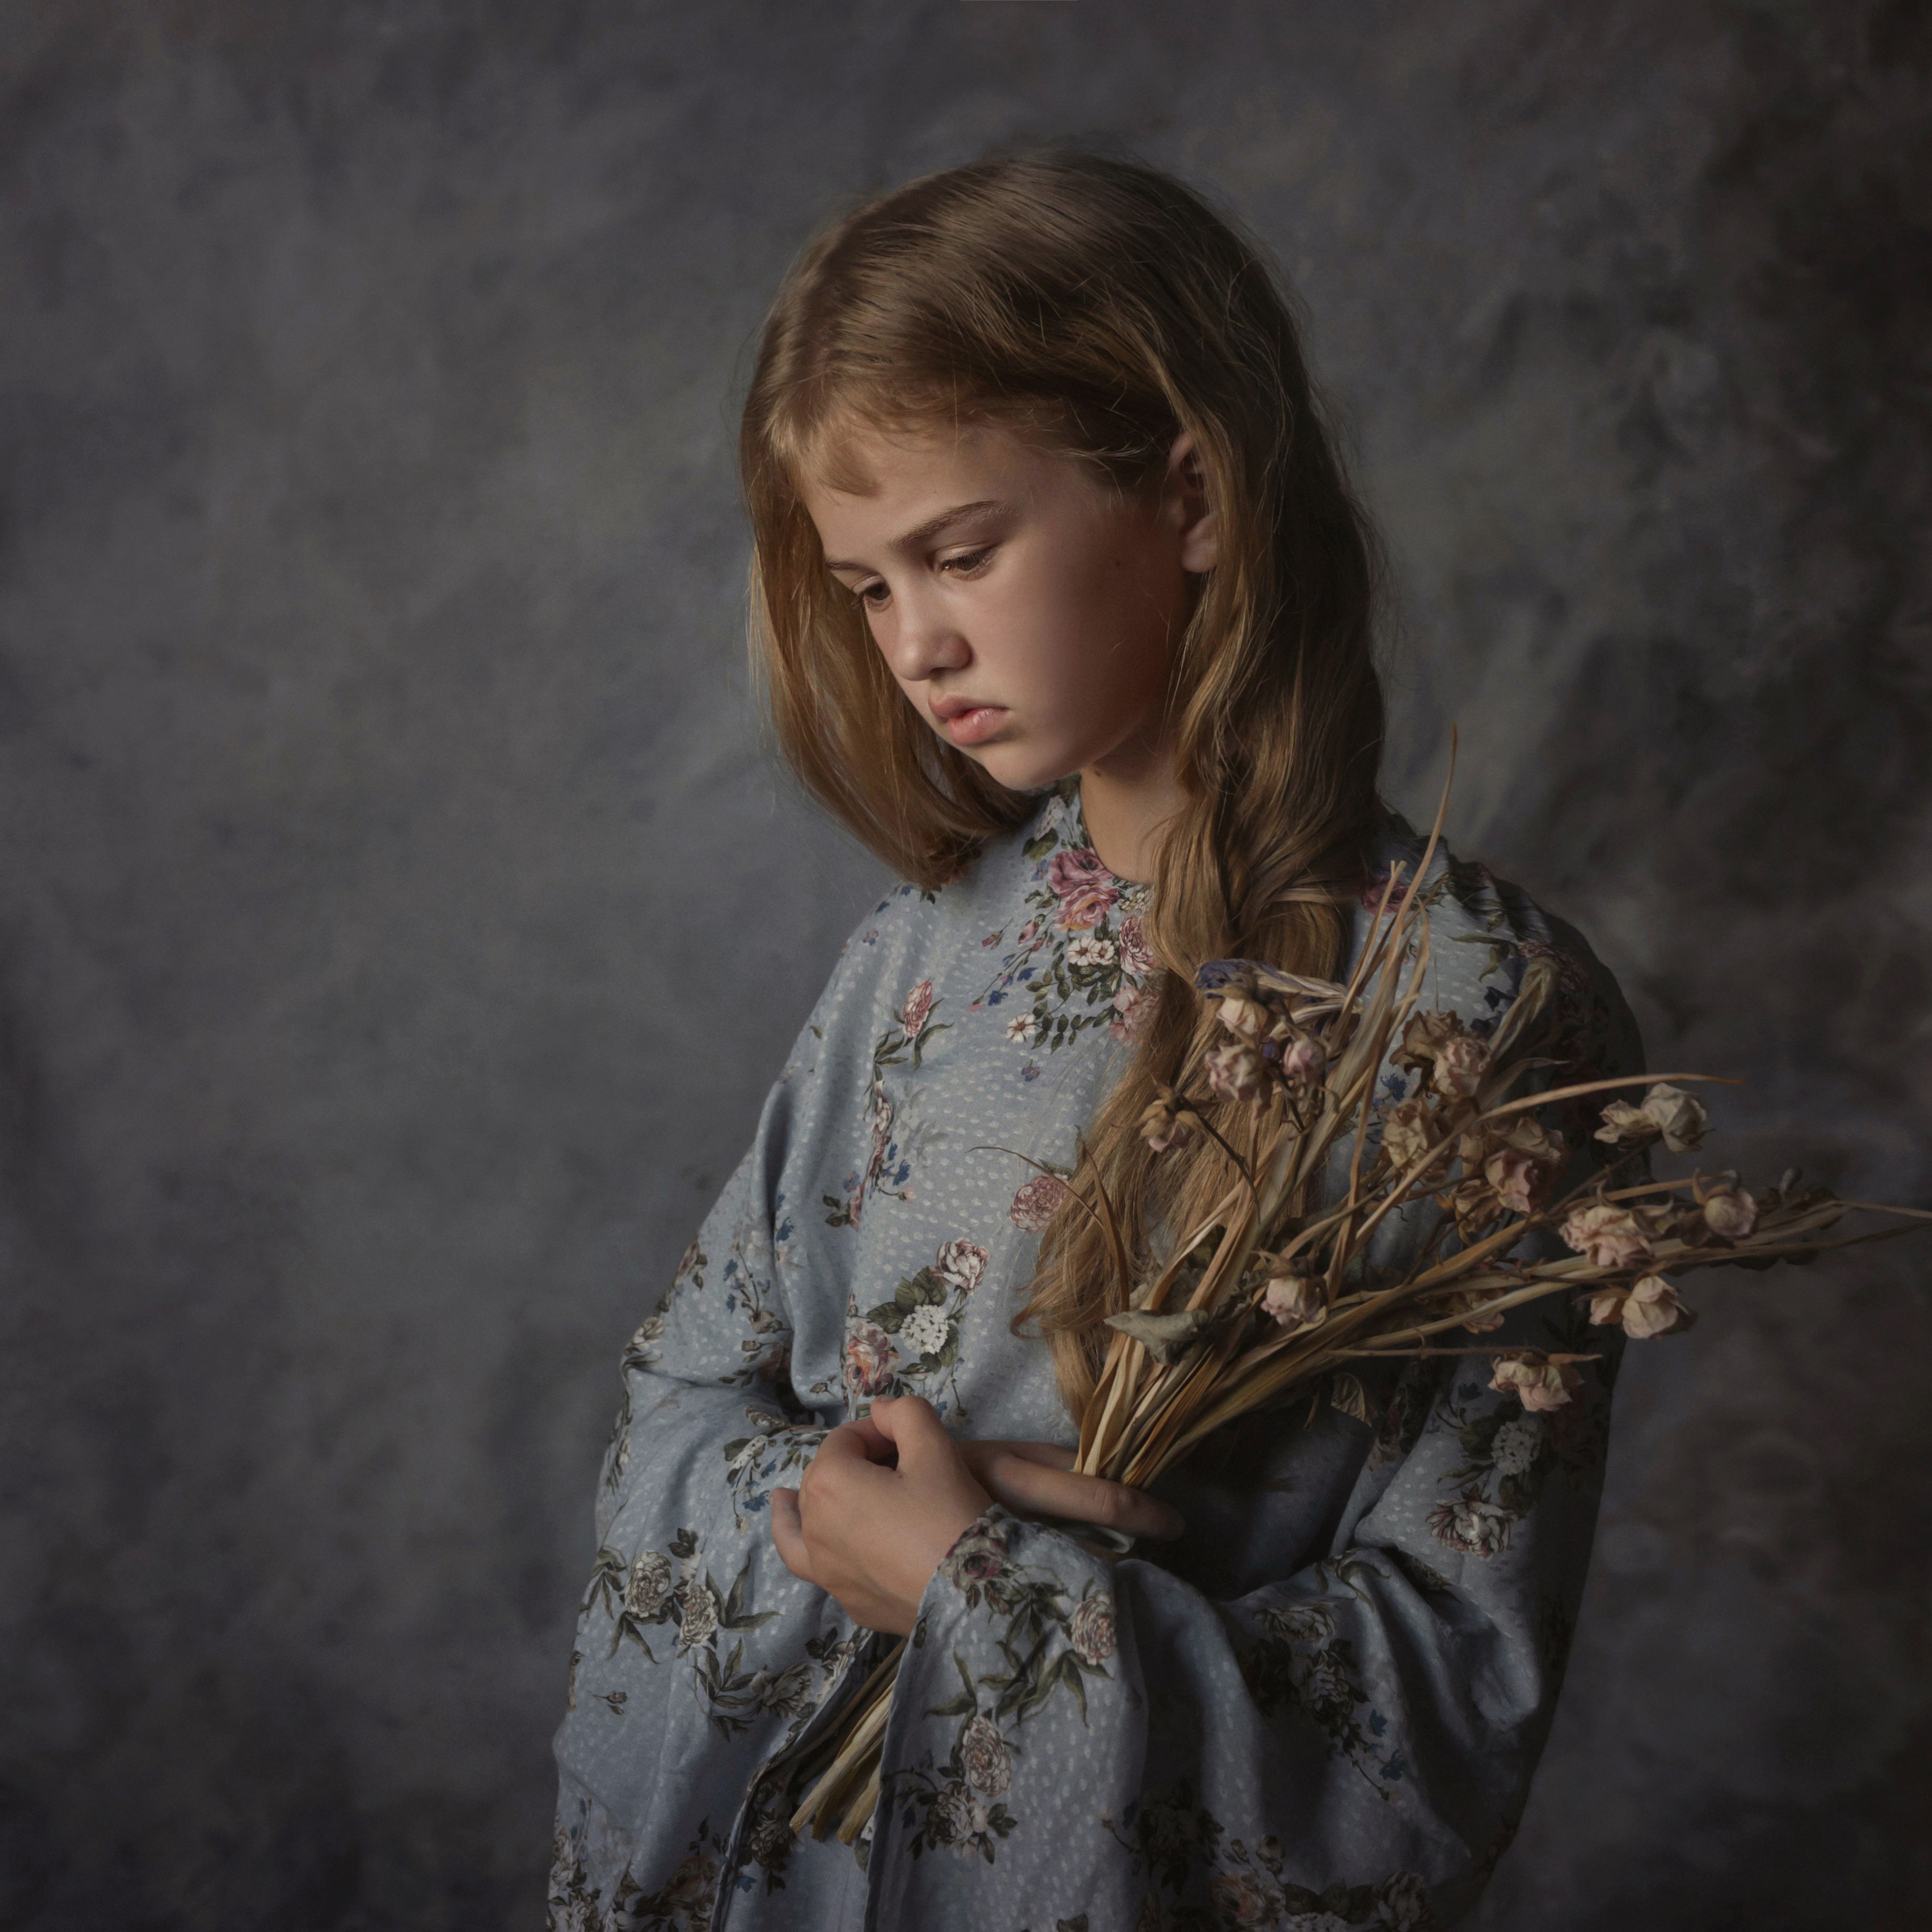 детскийпортрет дочка canon sigmaart 50mm портрет, Наталья Русских